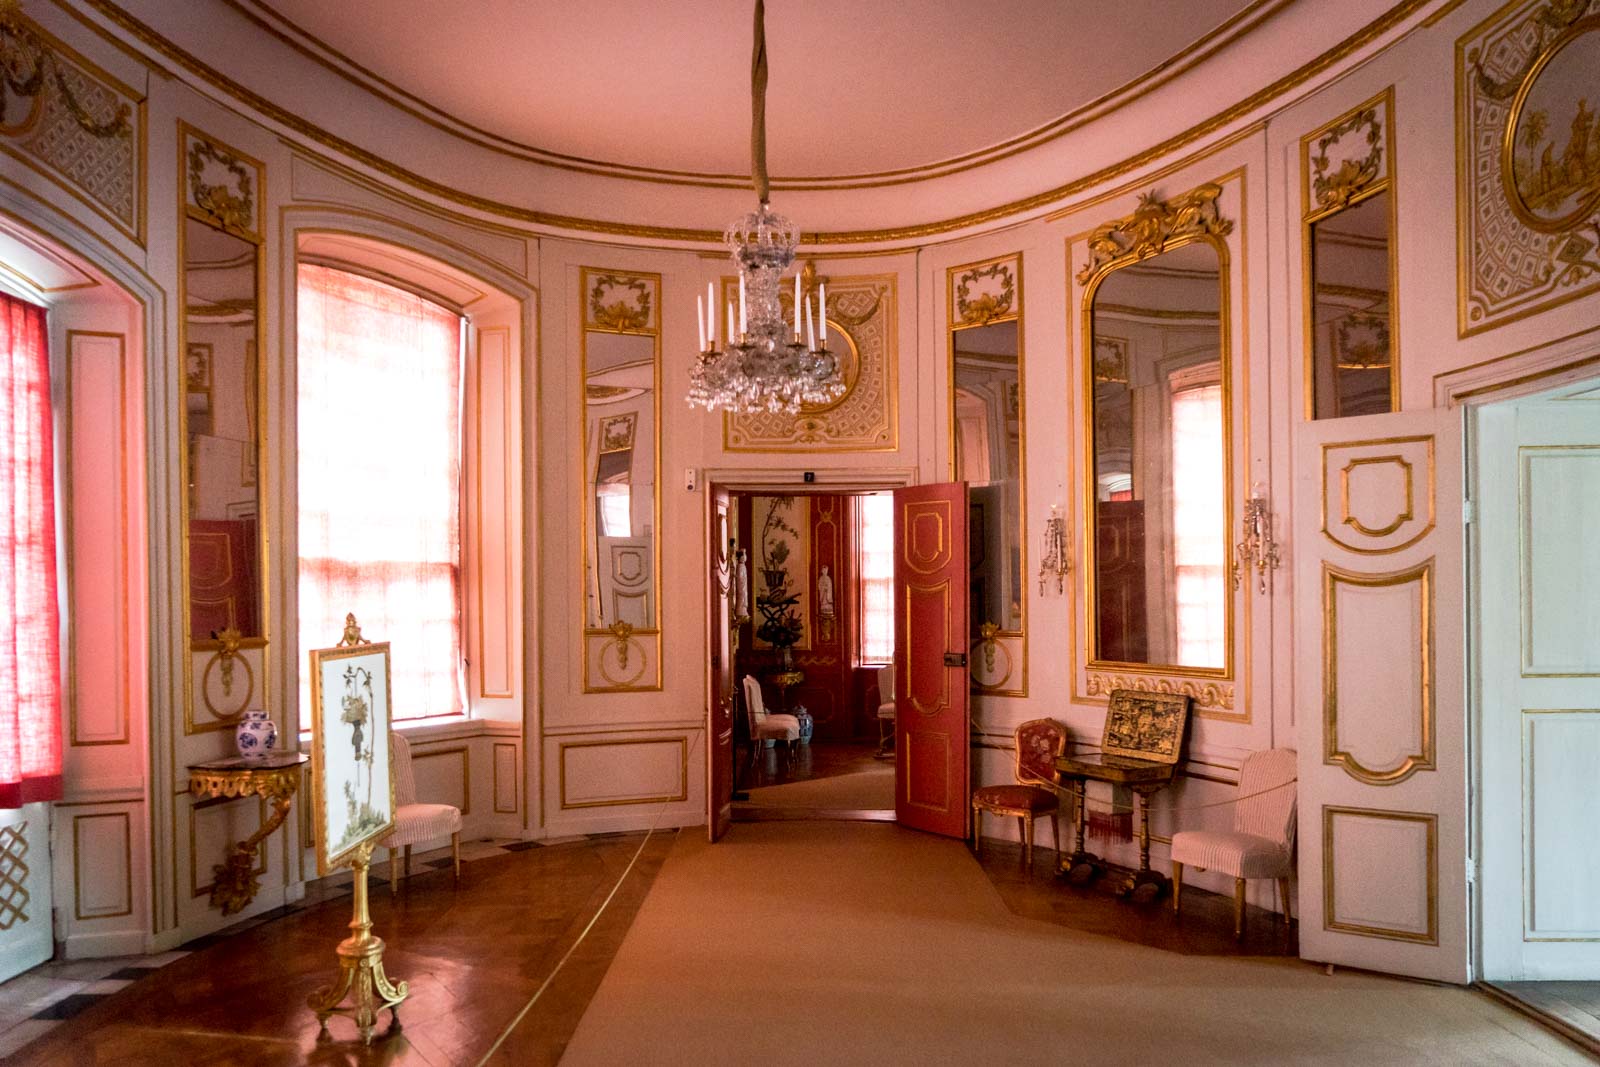 Visit Drottningholm Palace From Stockholm Sweden